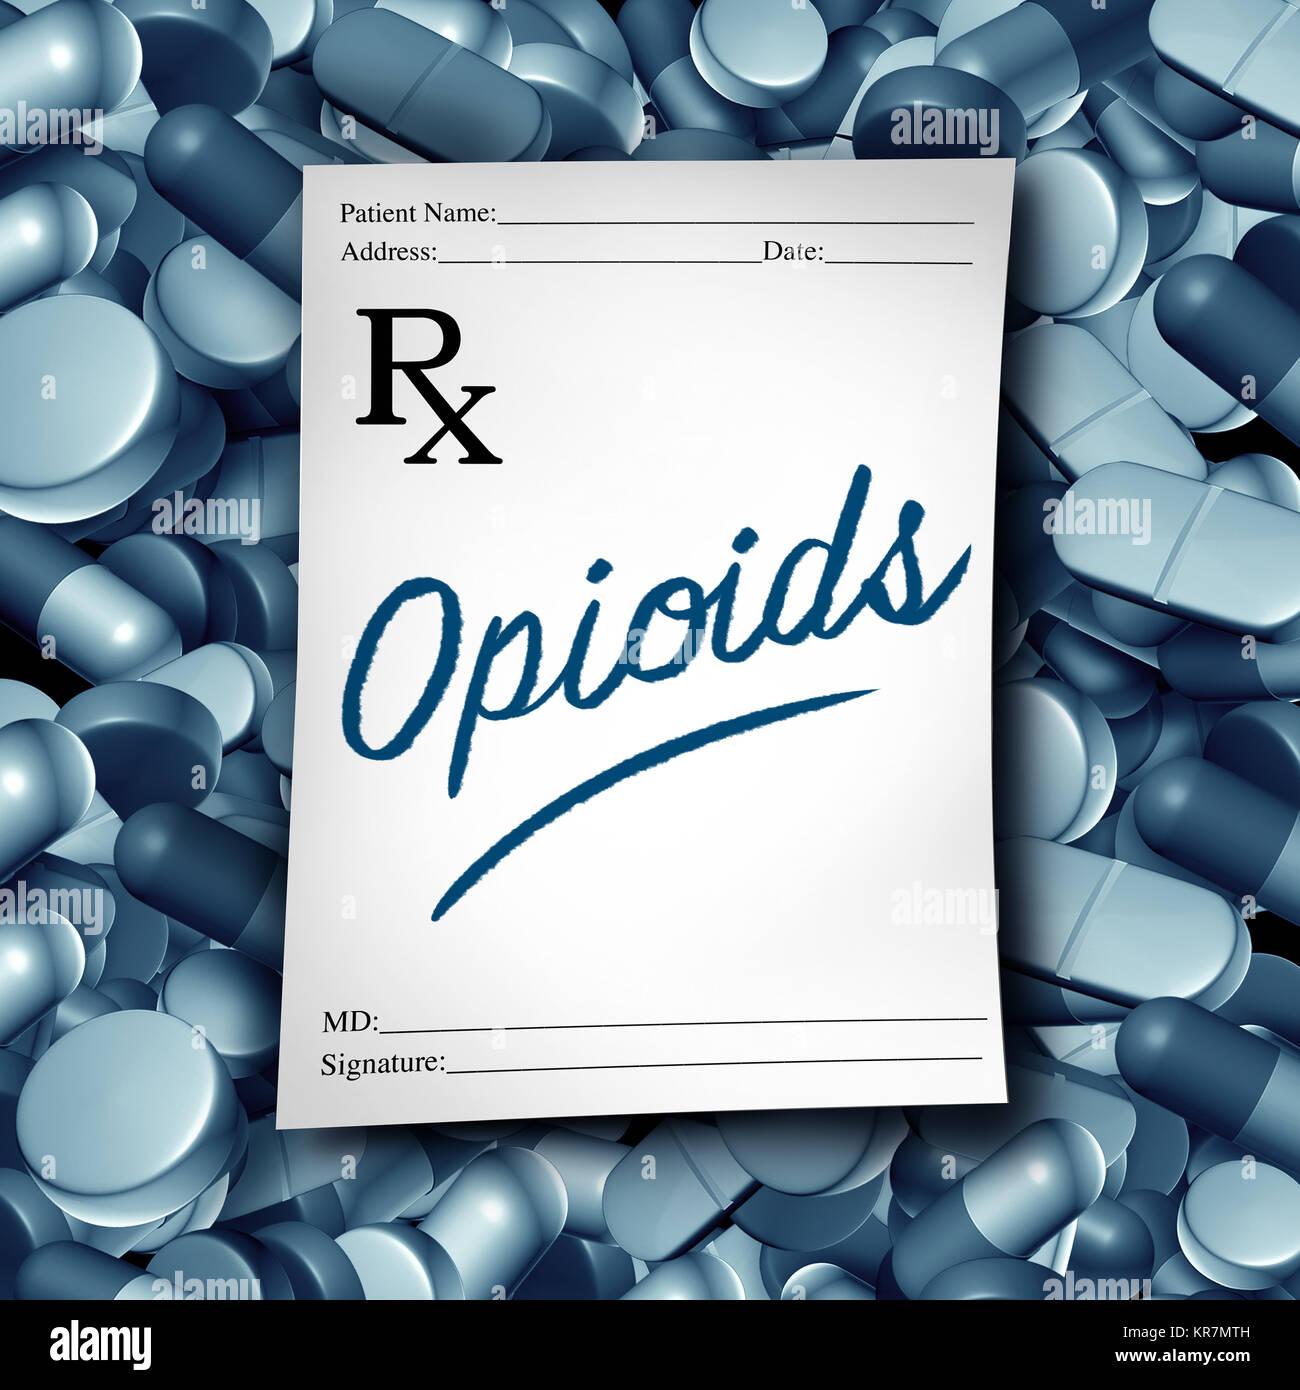 Gli oppioidi medico e la prescrizione di oppioidi rischio sanitario medical pillole crisi come prescritto un farmaco analgesico tossicodipendenza concetto epidemia. Foto Stock